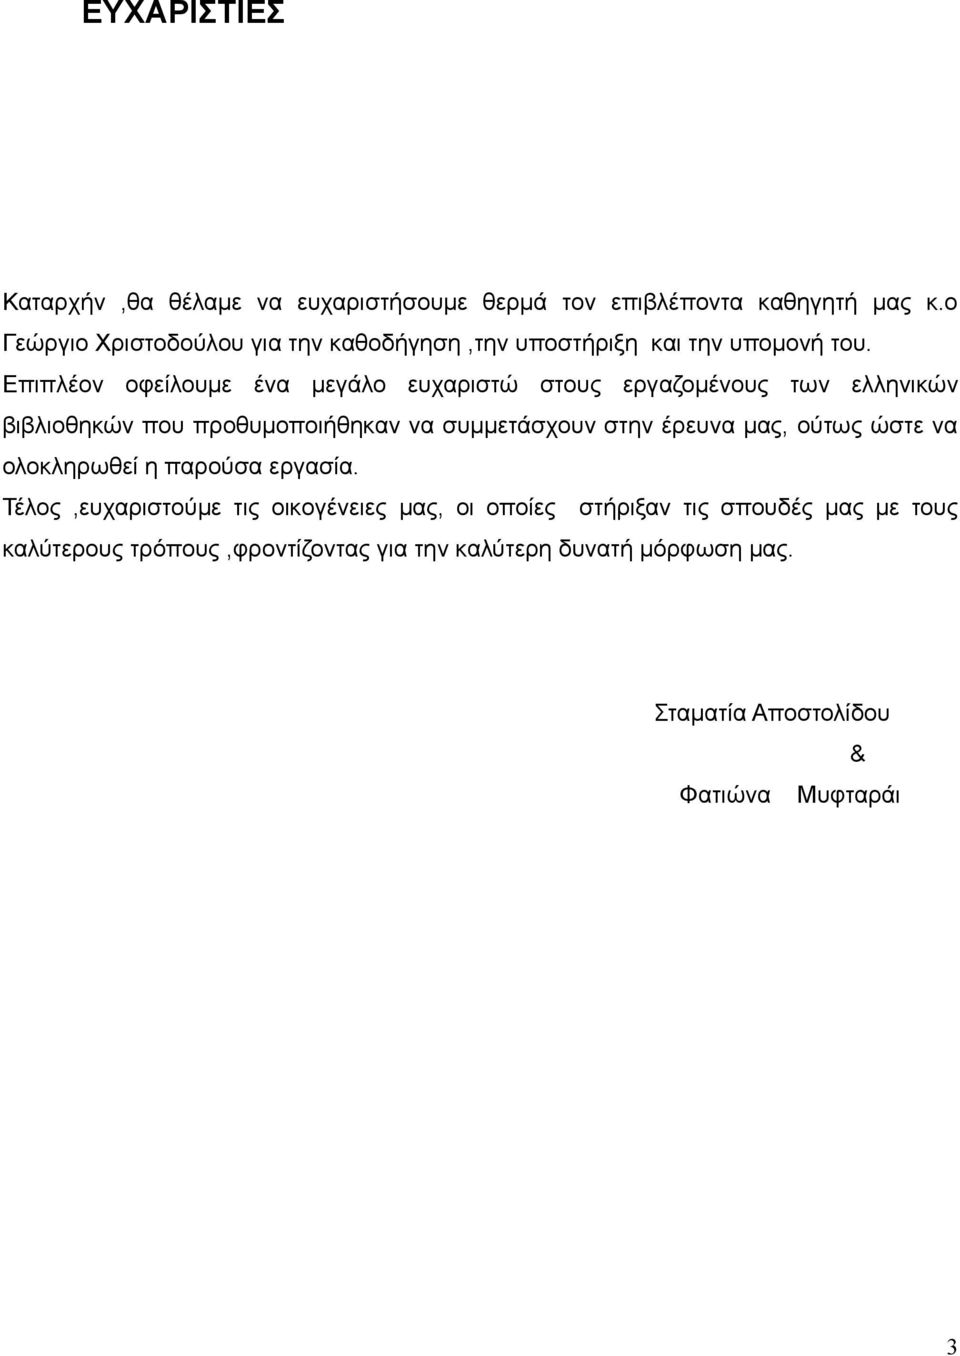 Επιπλέον οφείλουμε ένα μεγάλο ευχαριστώ στους εργαζομένους των ελληνικών βιβλιοθηκών που προθυμοποιήθηκαν να συμμετάσχουν στην έρευνα